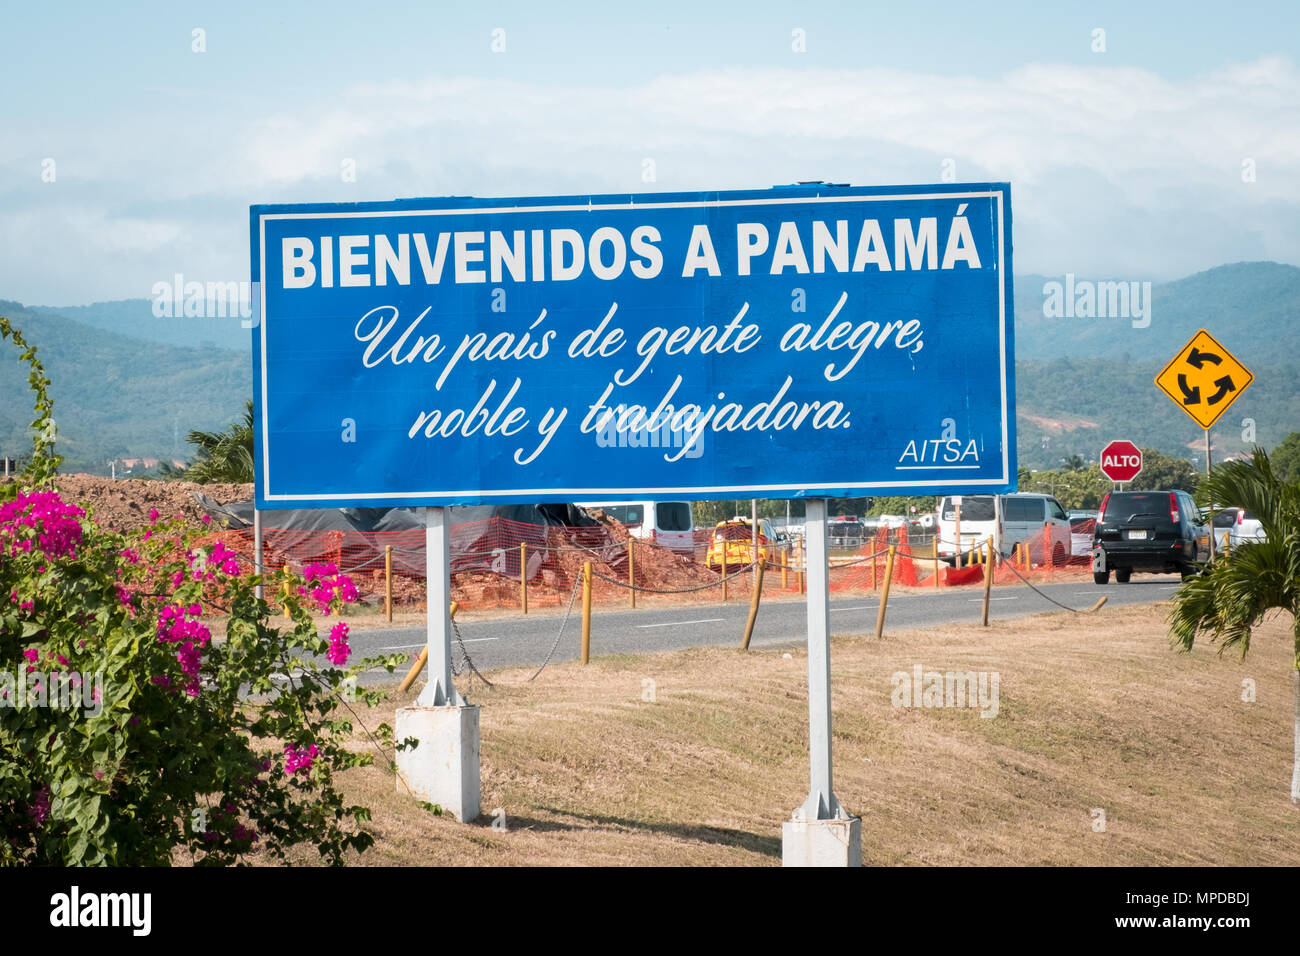 Panama City, Panama - März 2018: Willkommen in Panama unterschreiben (Bienvenidos a Panama) in der Nähe von Flughafen in Panama City Stockfoto